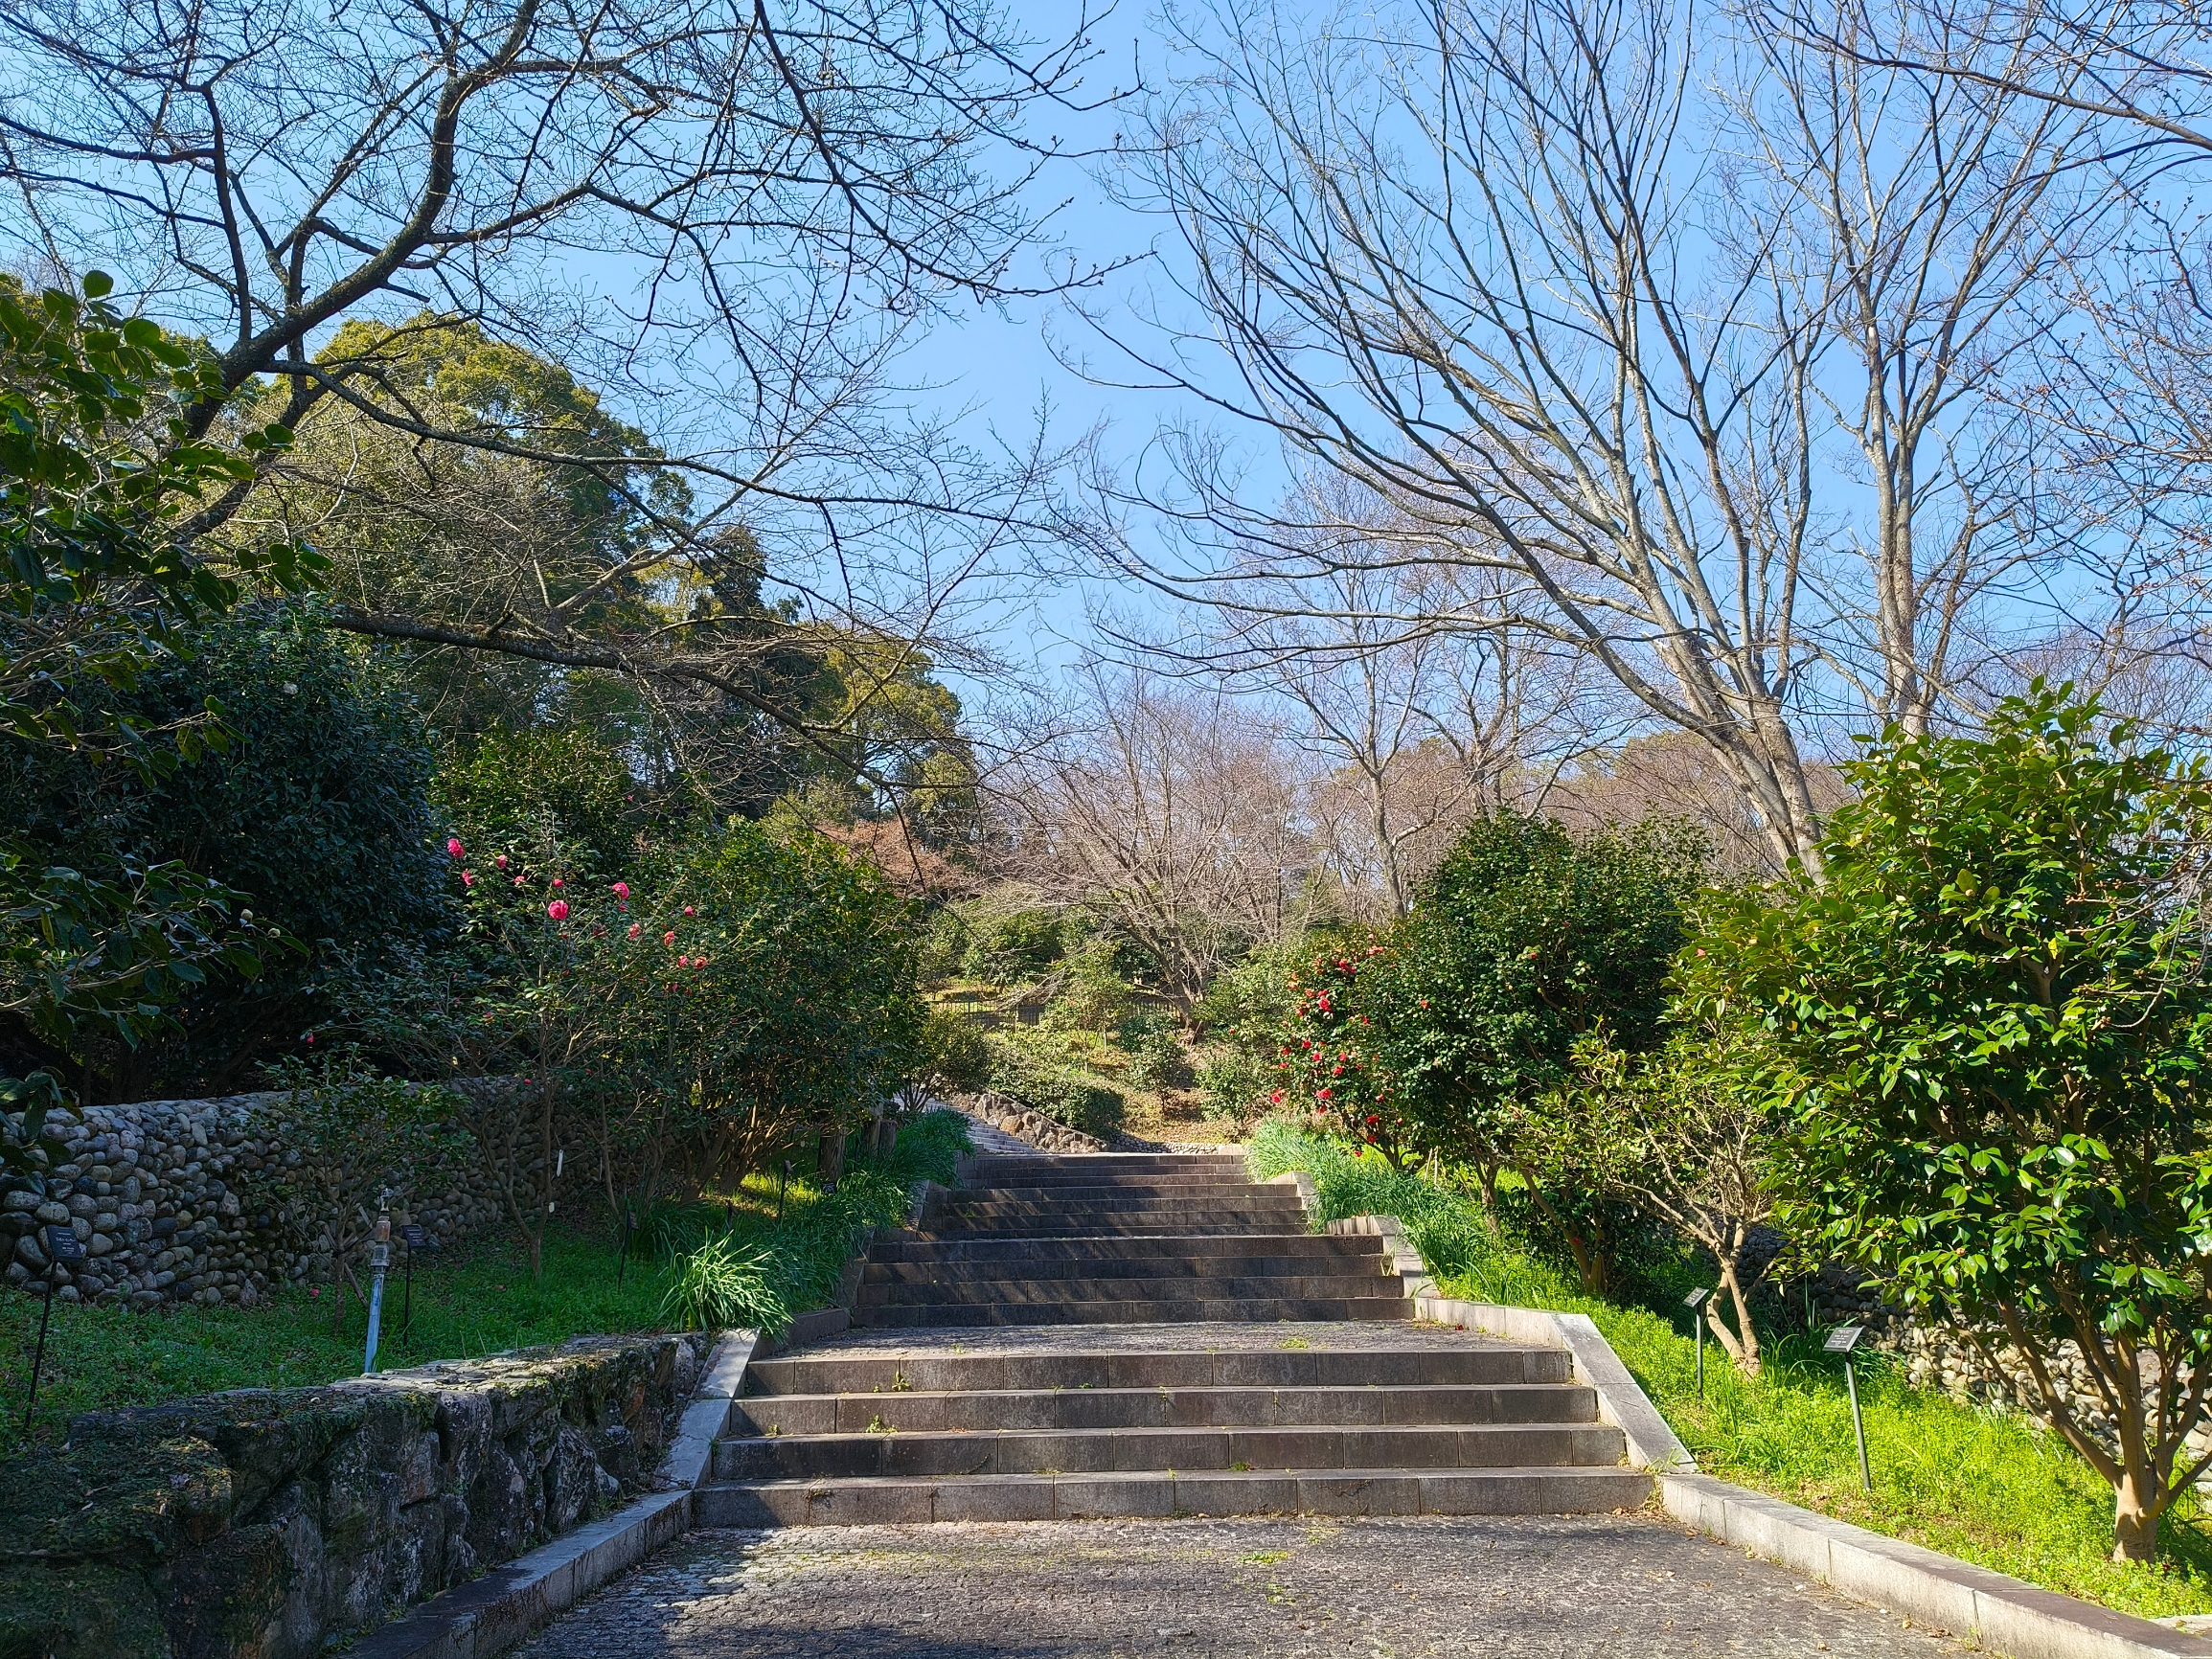 通往山茶花园的阶梯